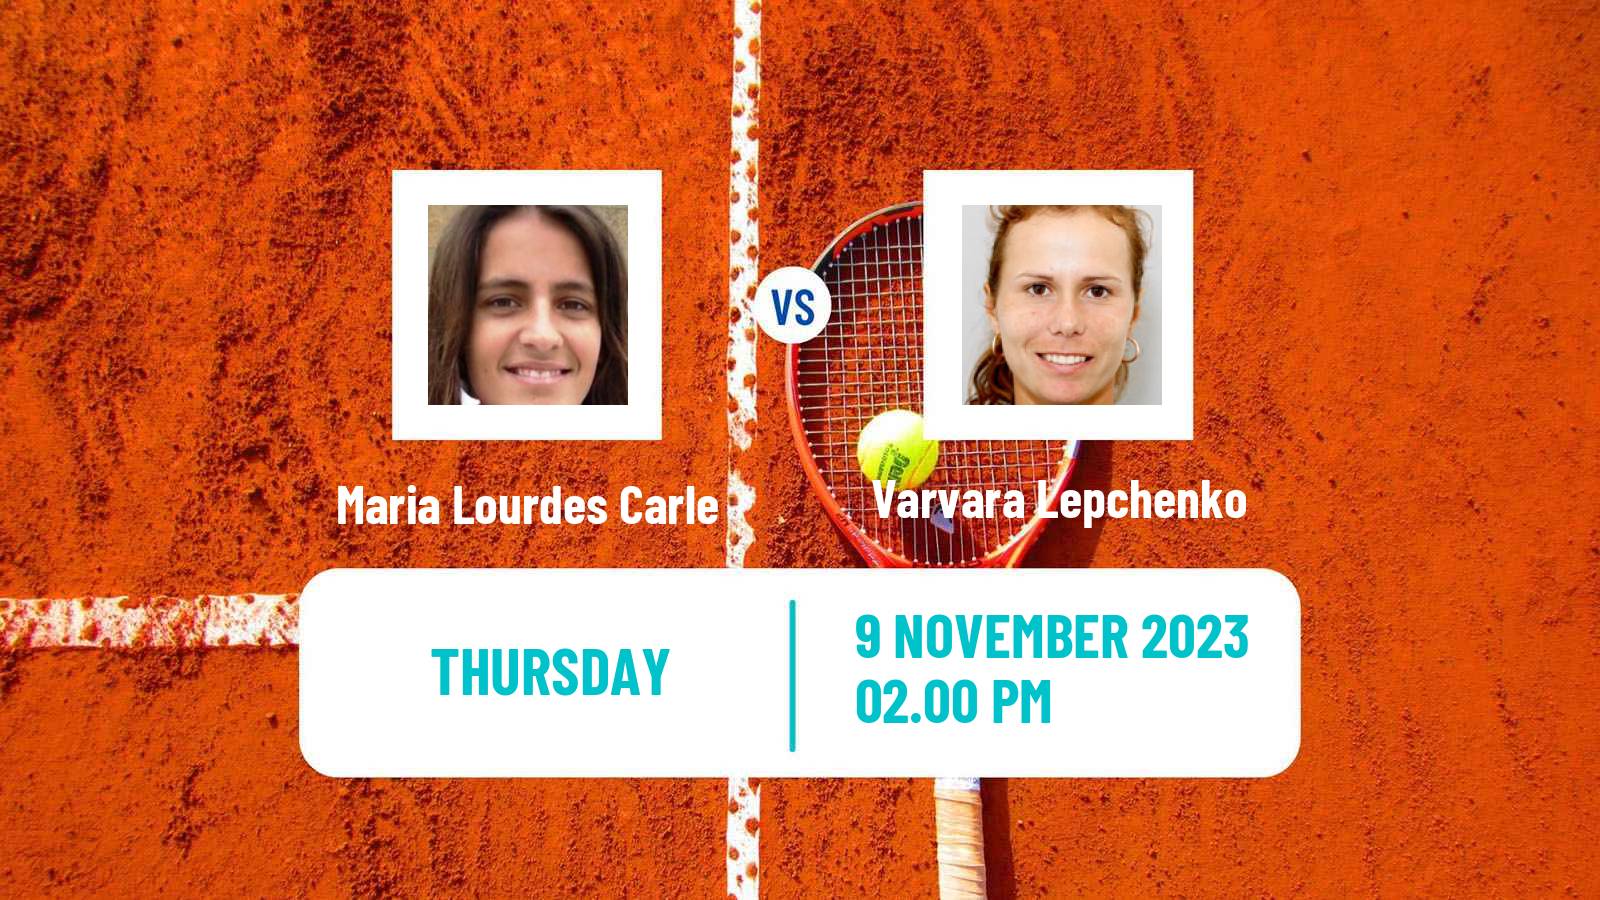 Tennis ITF W100 Charleston Sc 2 Women Maria Lourdes Carle - Varvara Lepchenko